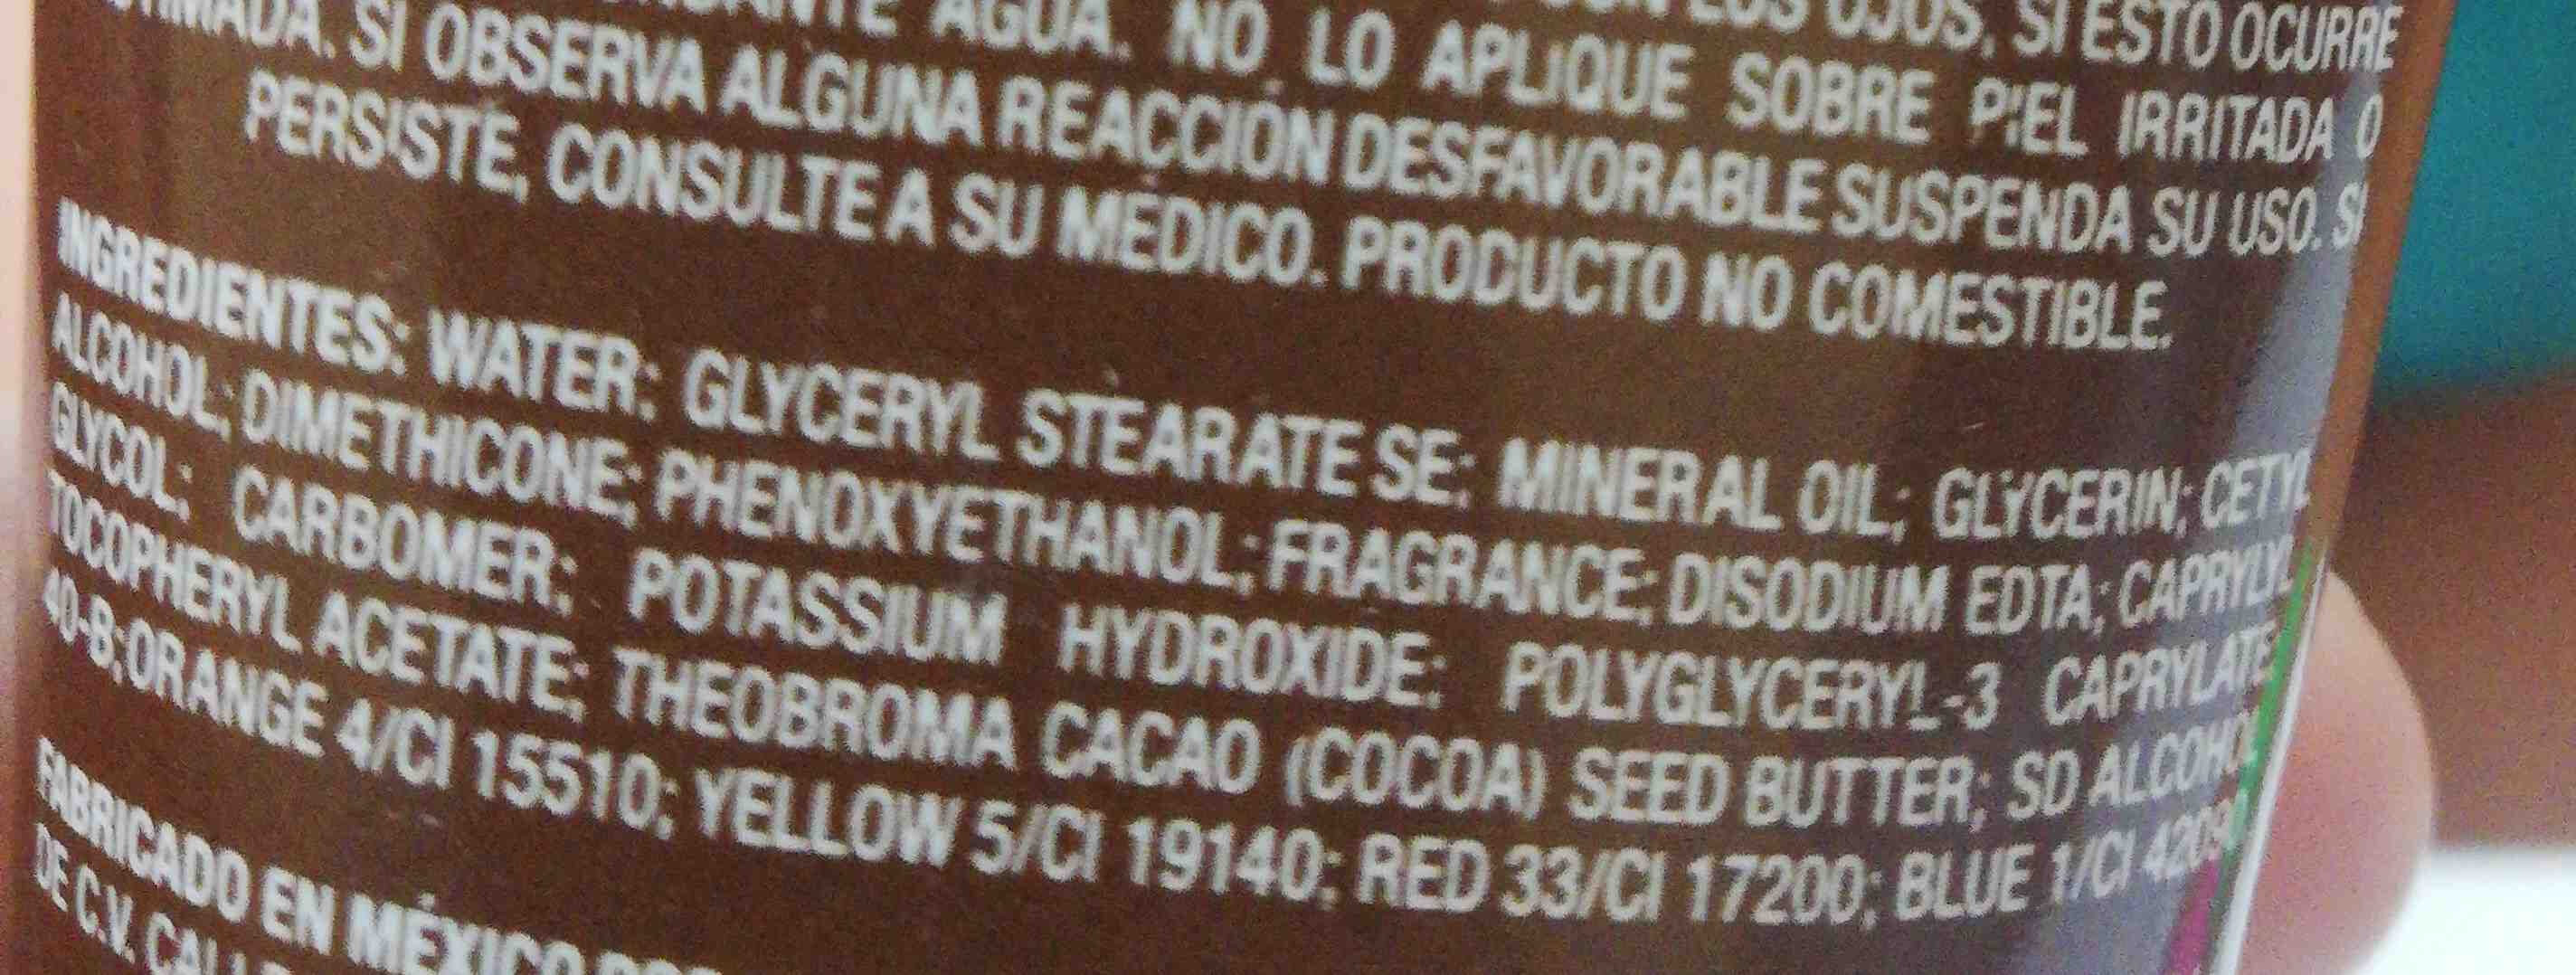 Manteca de cacao - Ingredients - en